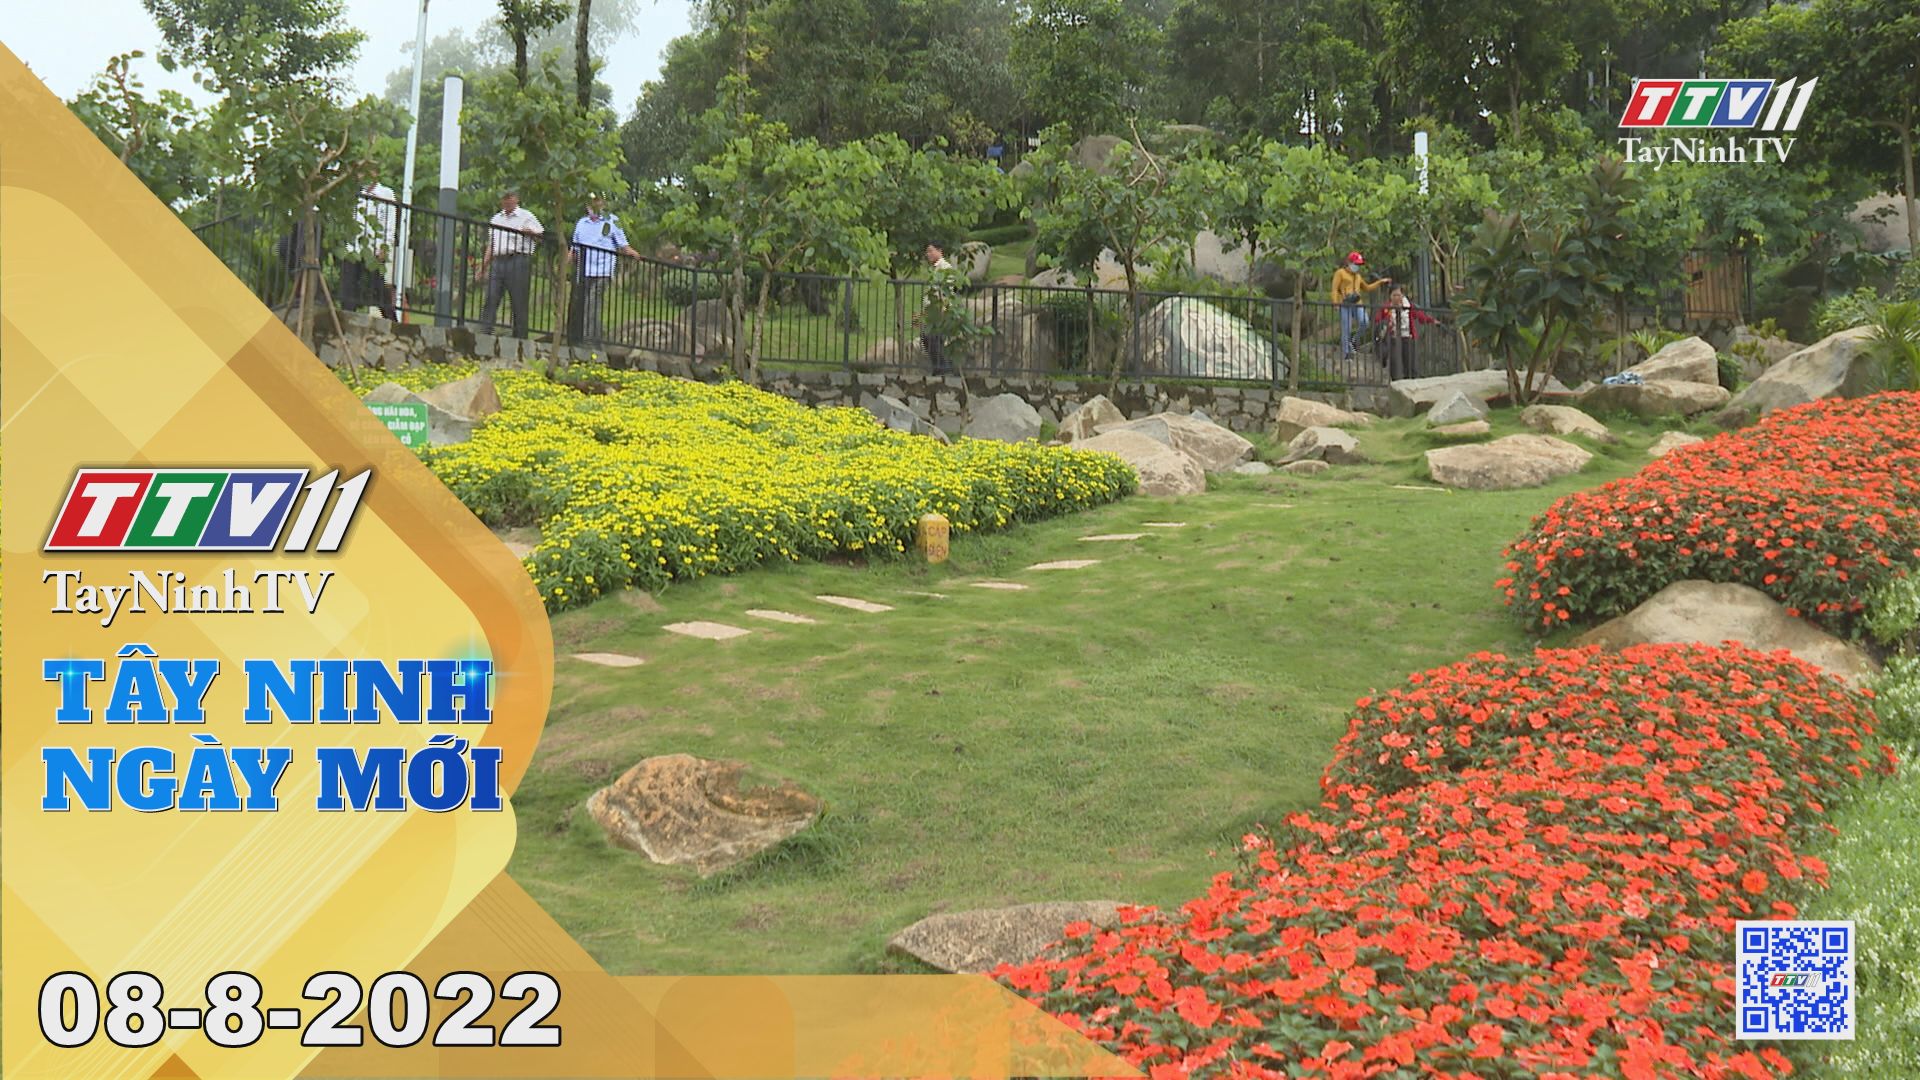 Tây Ninh ngày mới 08-8-2022 | Tin tức hôm nay | TayNinhTV